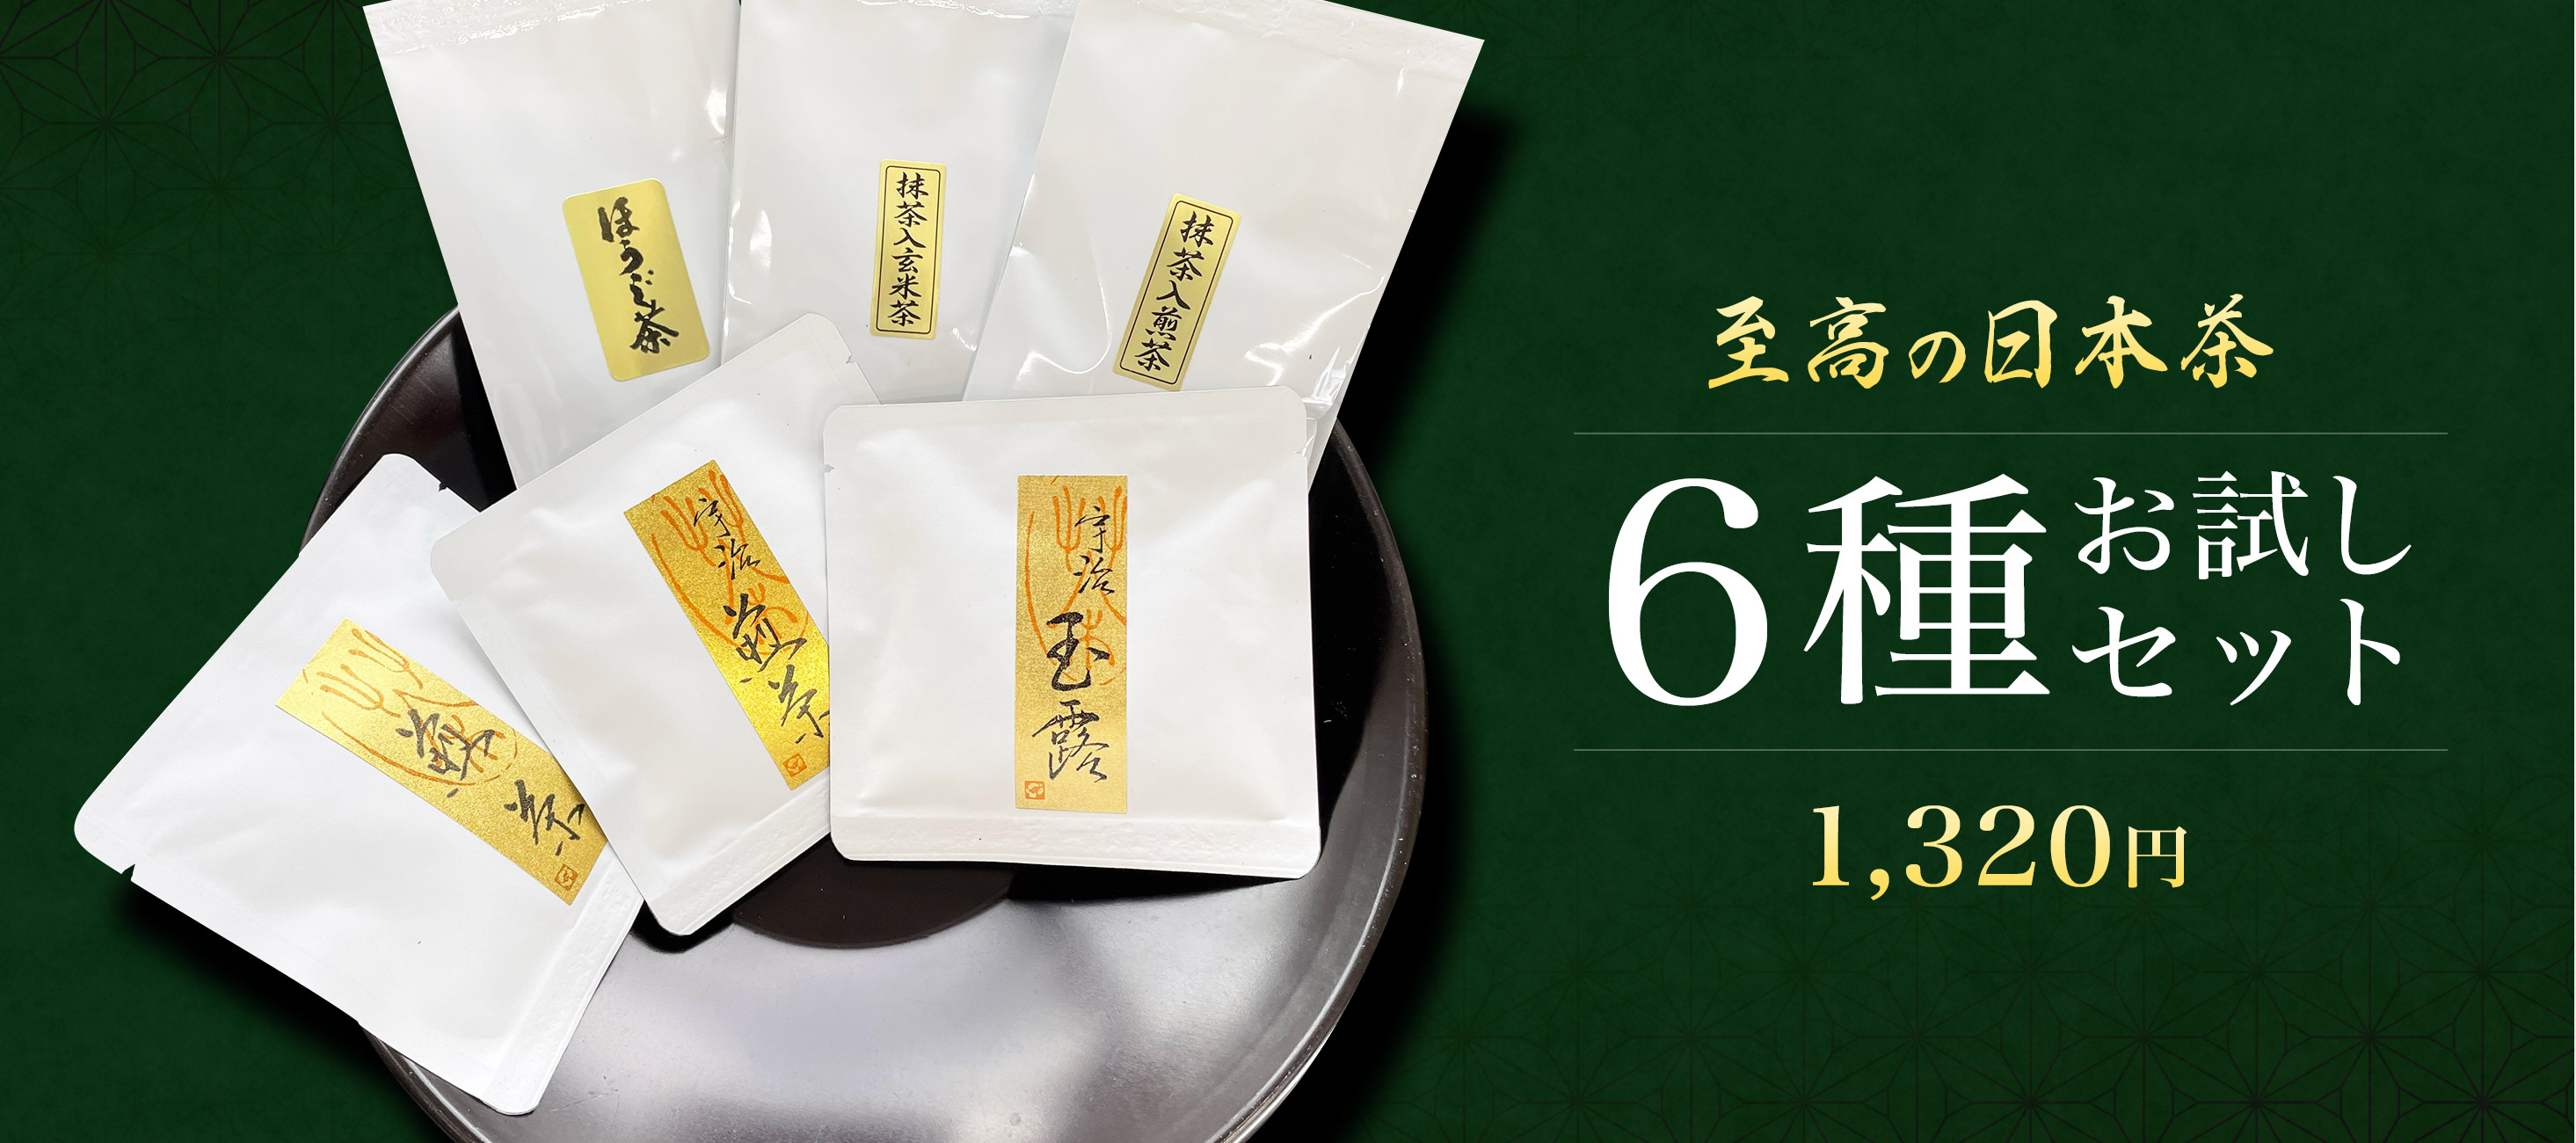 至高の日本茶 6種お試しセット